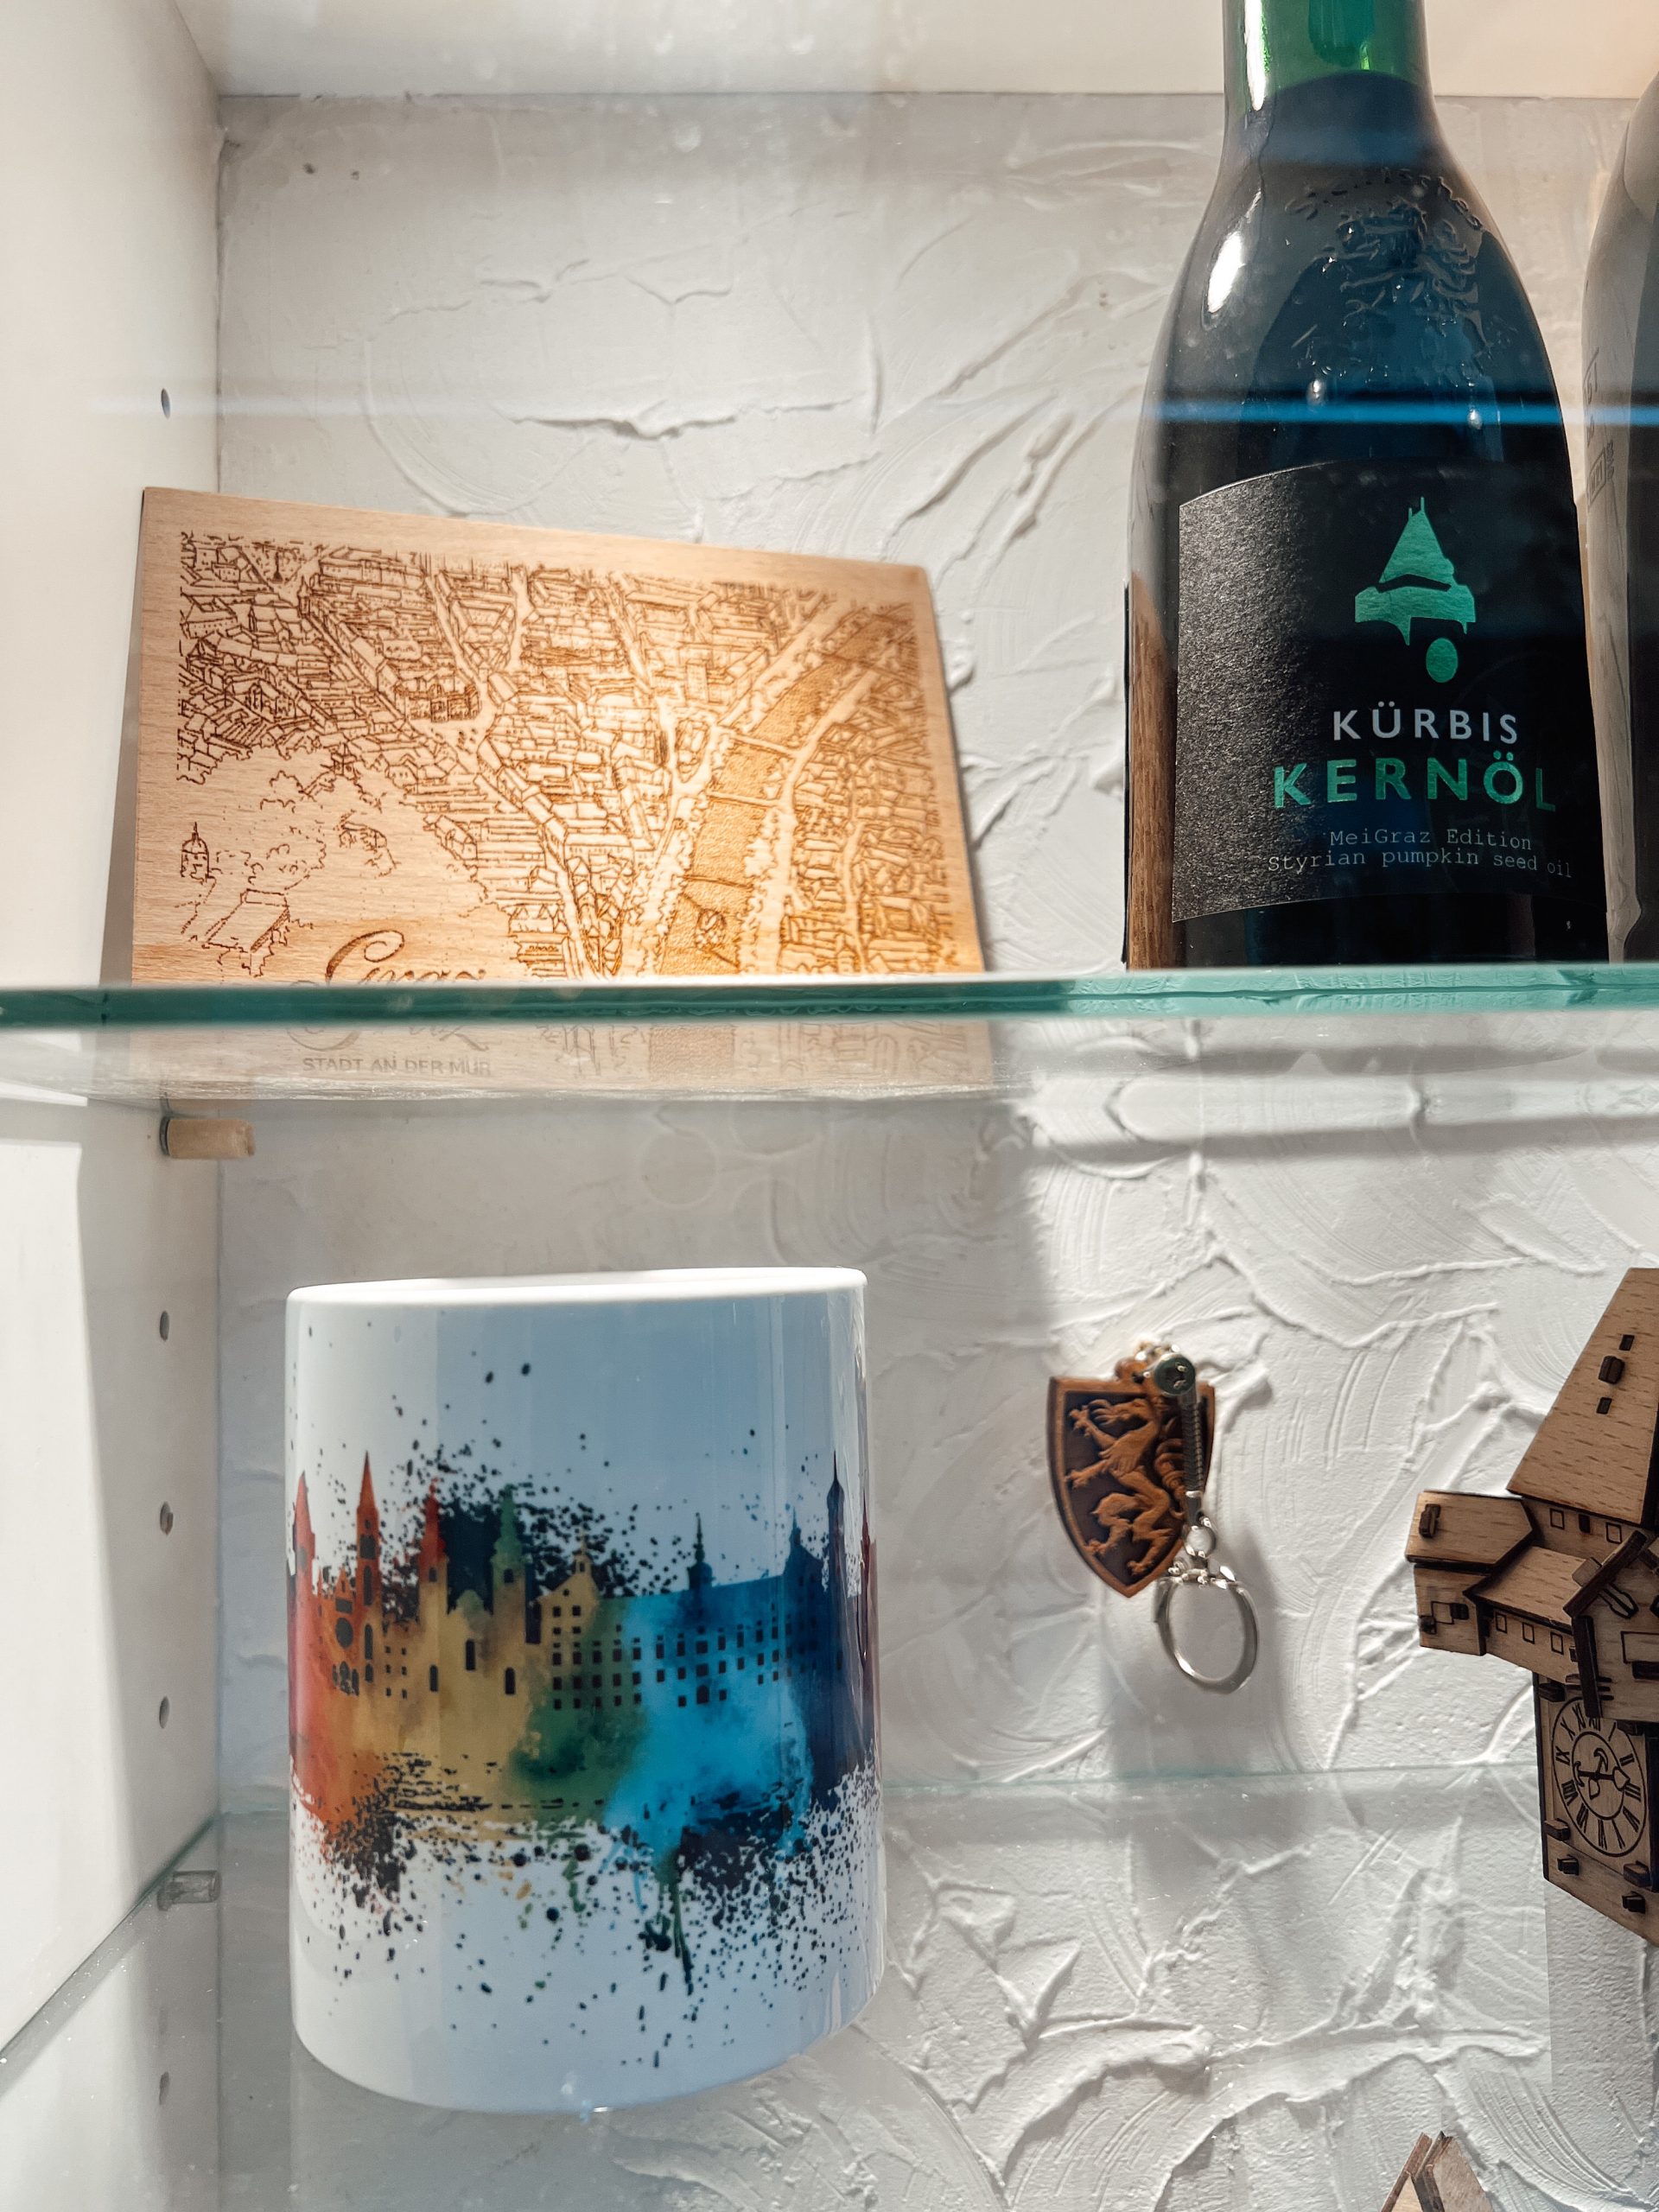 Holzpostkarte mit Abbildung von Graz von oben neben einem steirischen Kürbiskernöl, darunter eine weiße Tasse mit der Skyline von Graz in bunt, Schlüsselanhänger mit steirischem Panther aus Holz und zum Teil sichtbar ein Uhrturm aus Holz in einem Schaufenster